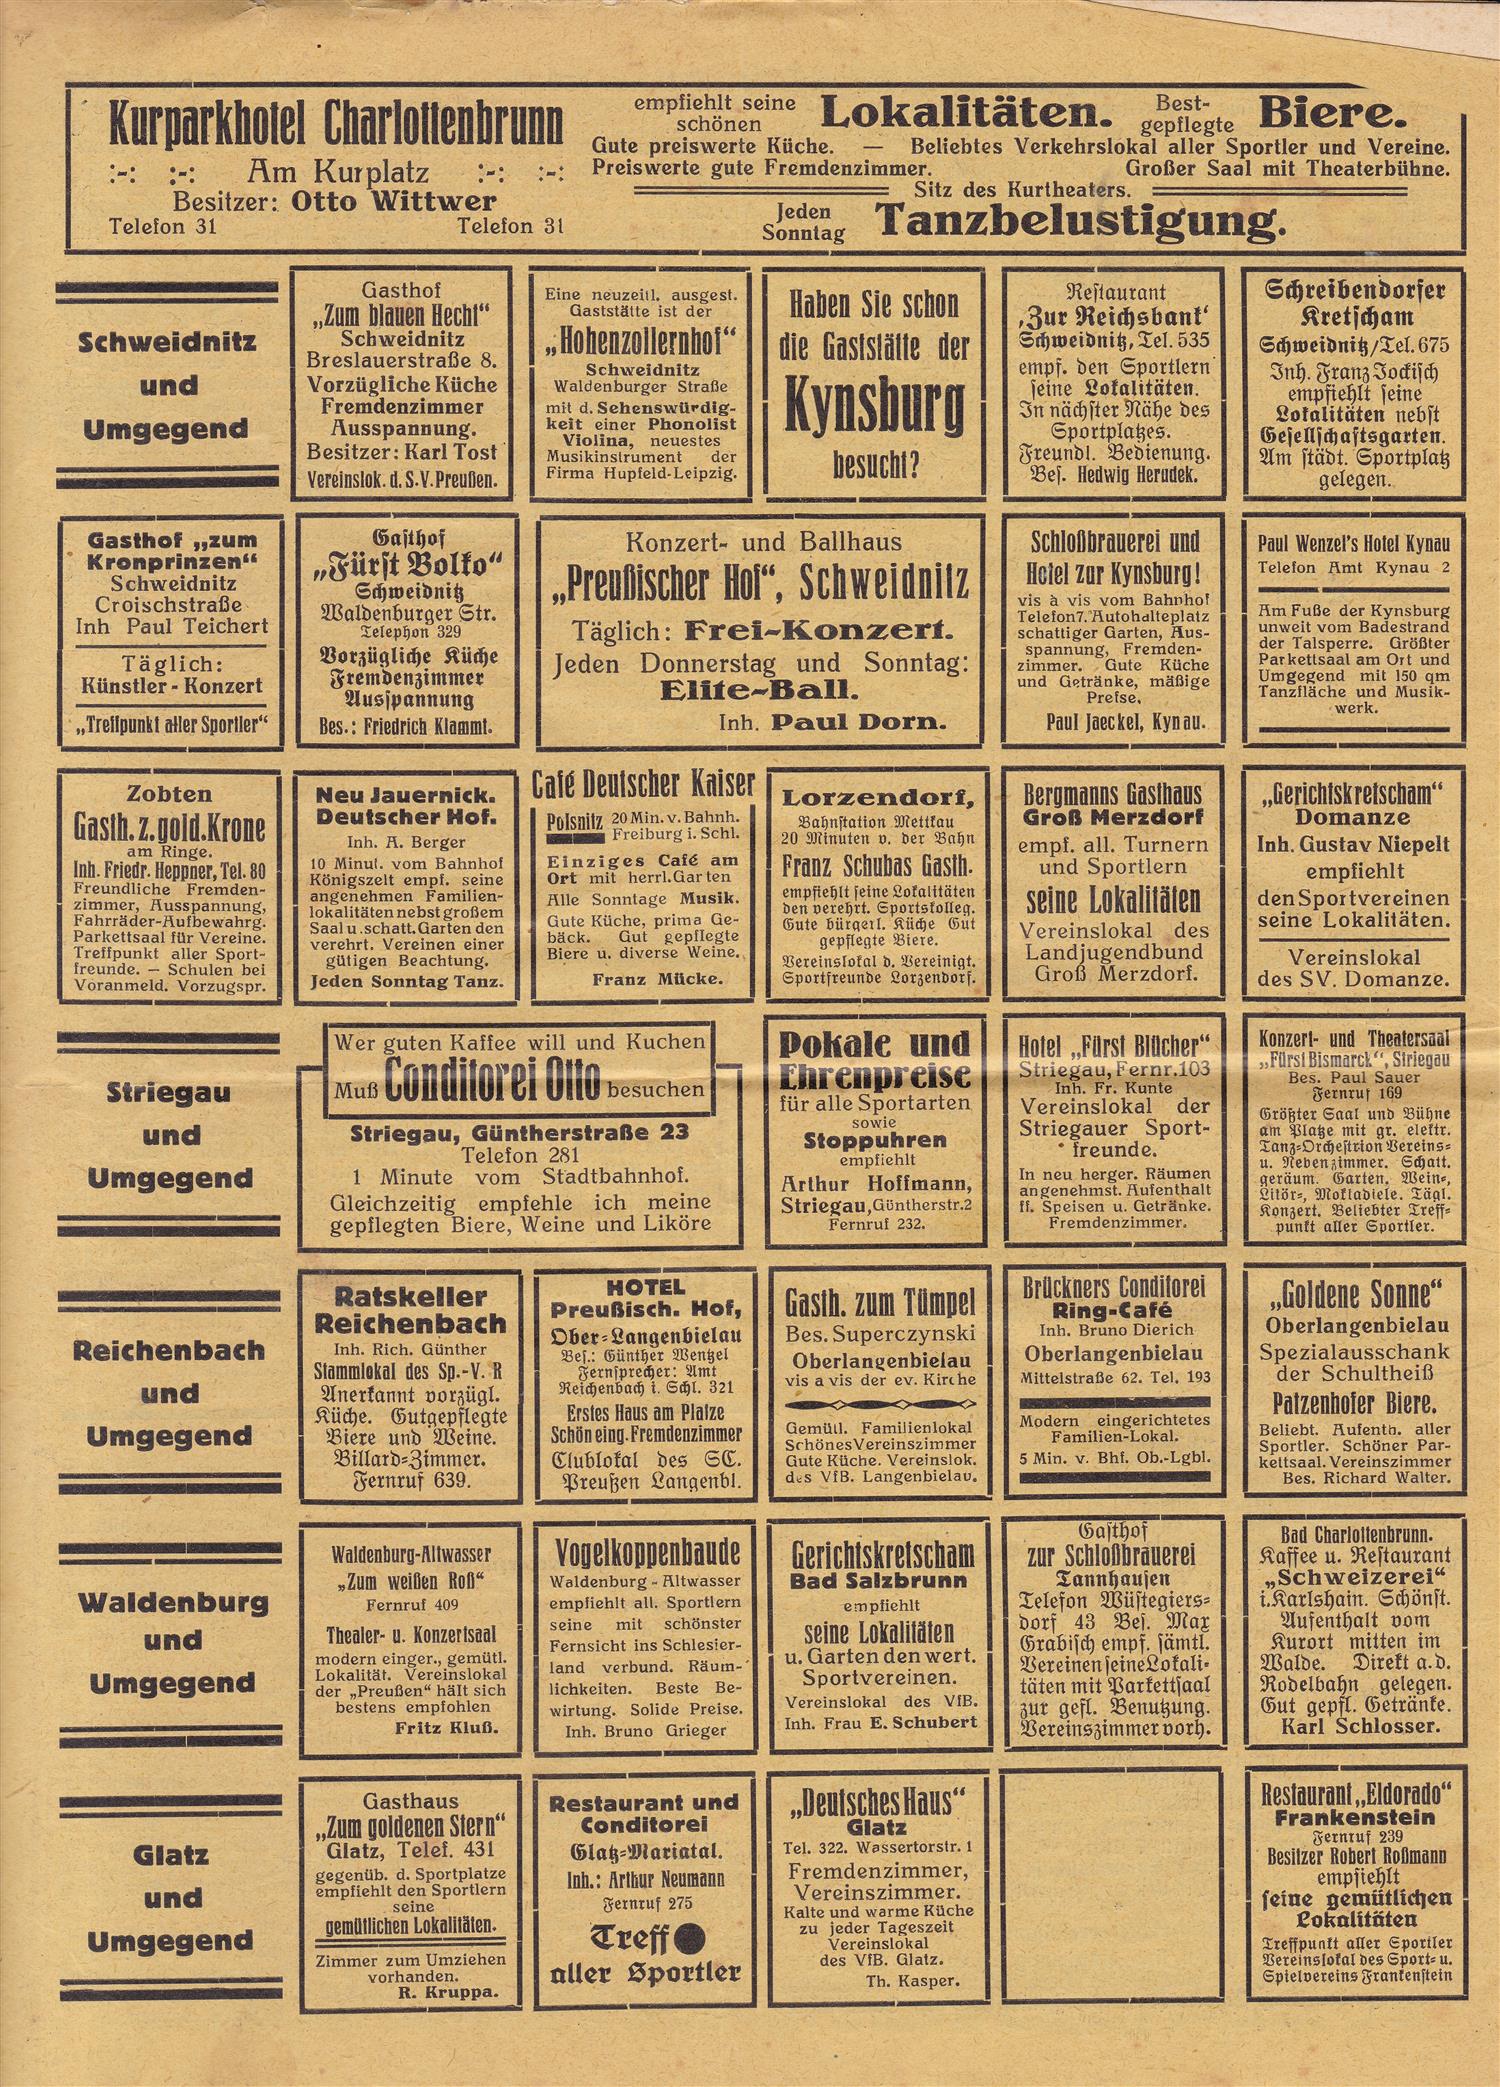 Schlesiche Sport Woche 26 05 1926 (1)